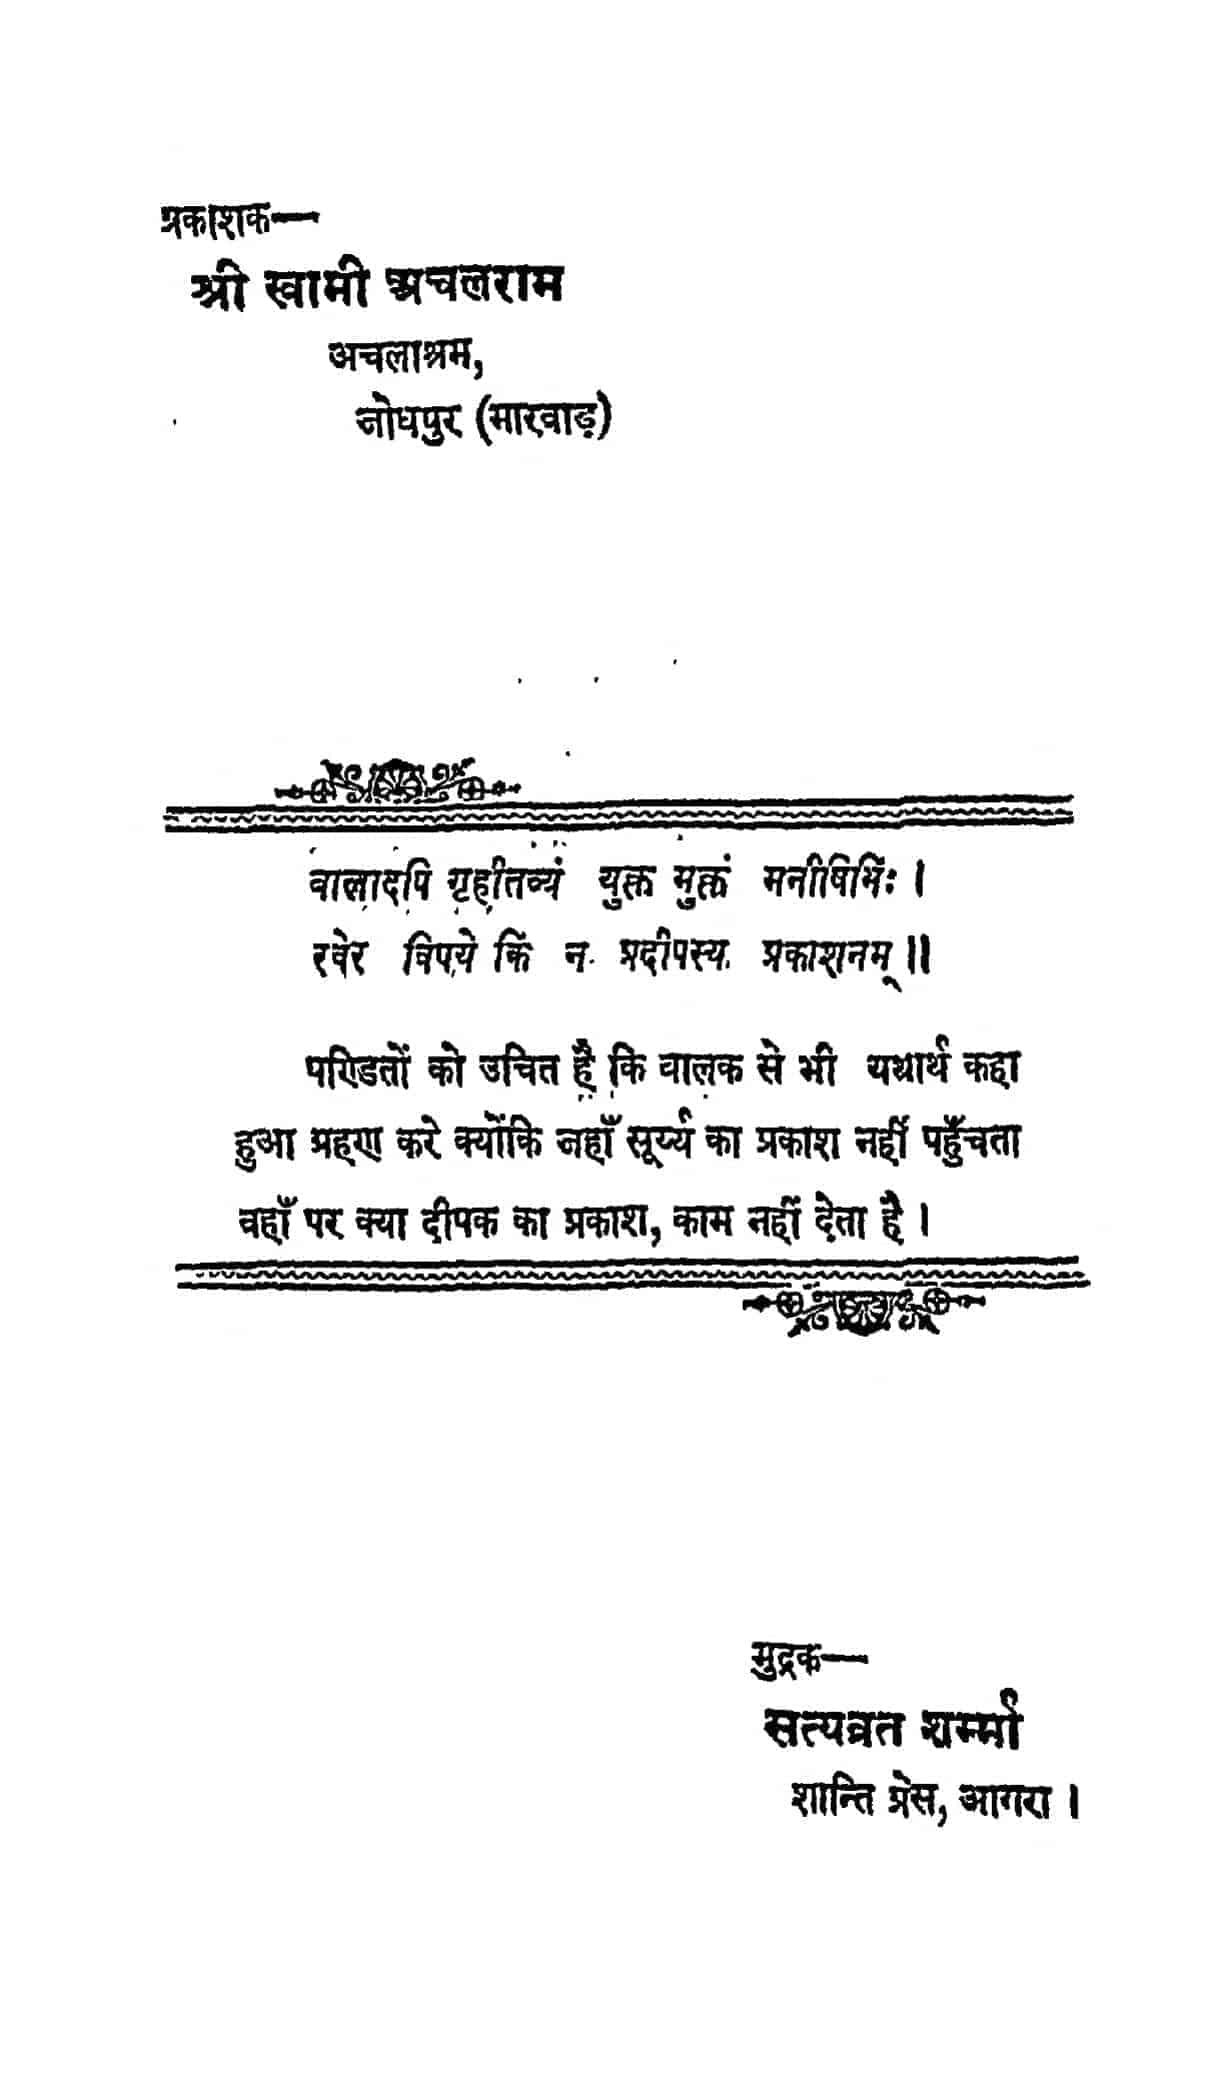 hindu dharm essay in hindi